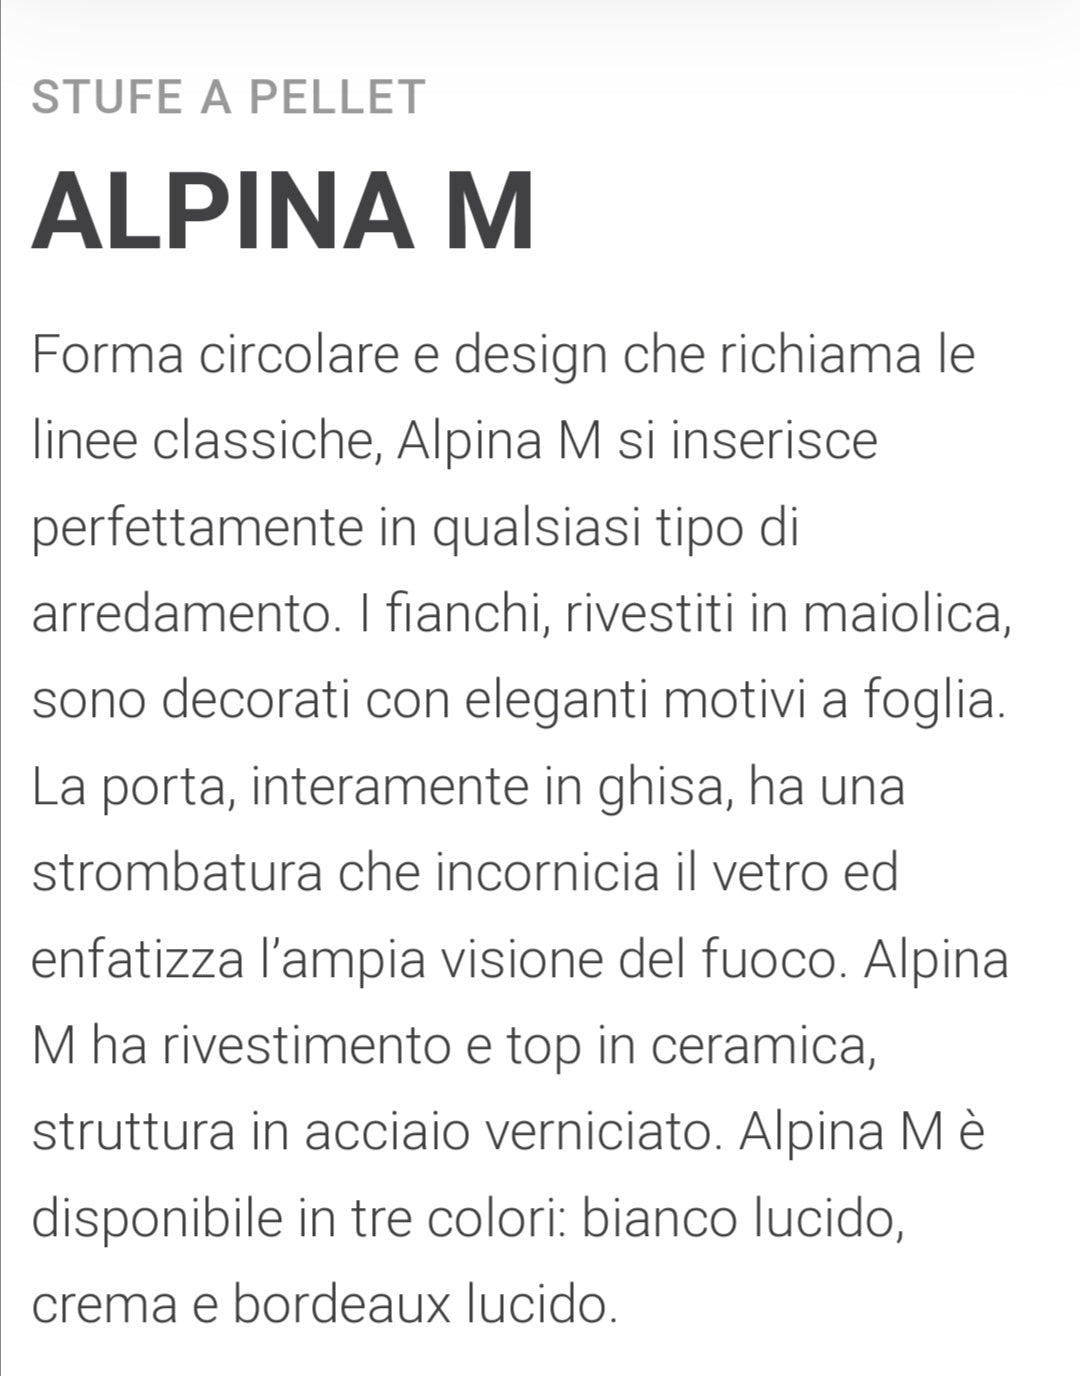 Alpina Crema MW24 Stufa Idro a Pellet Caminetti Montegrappa